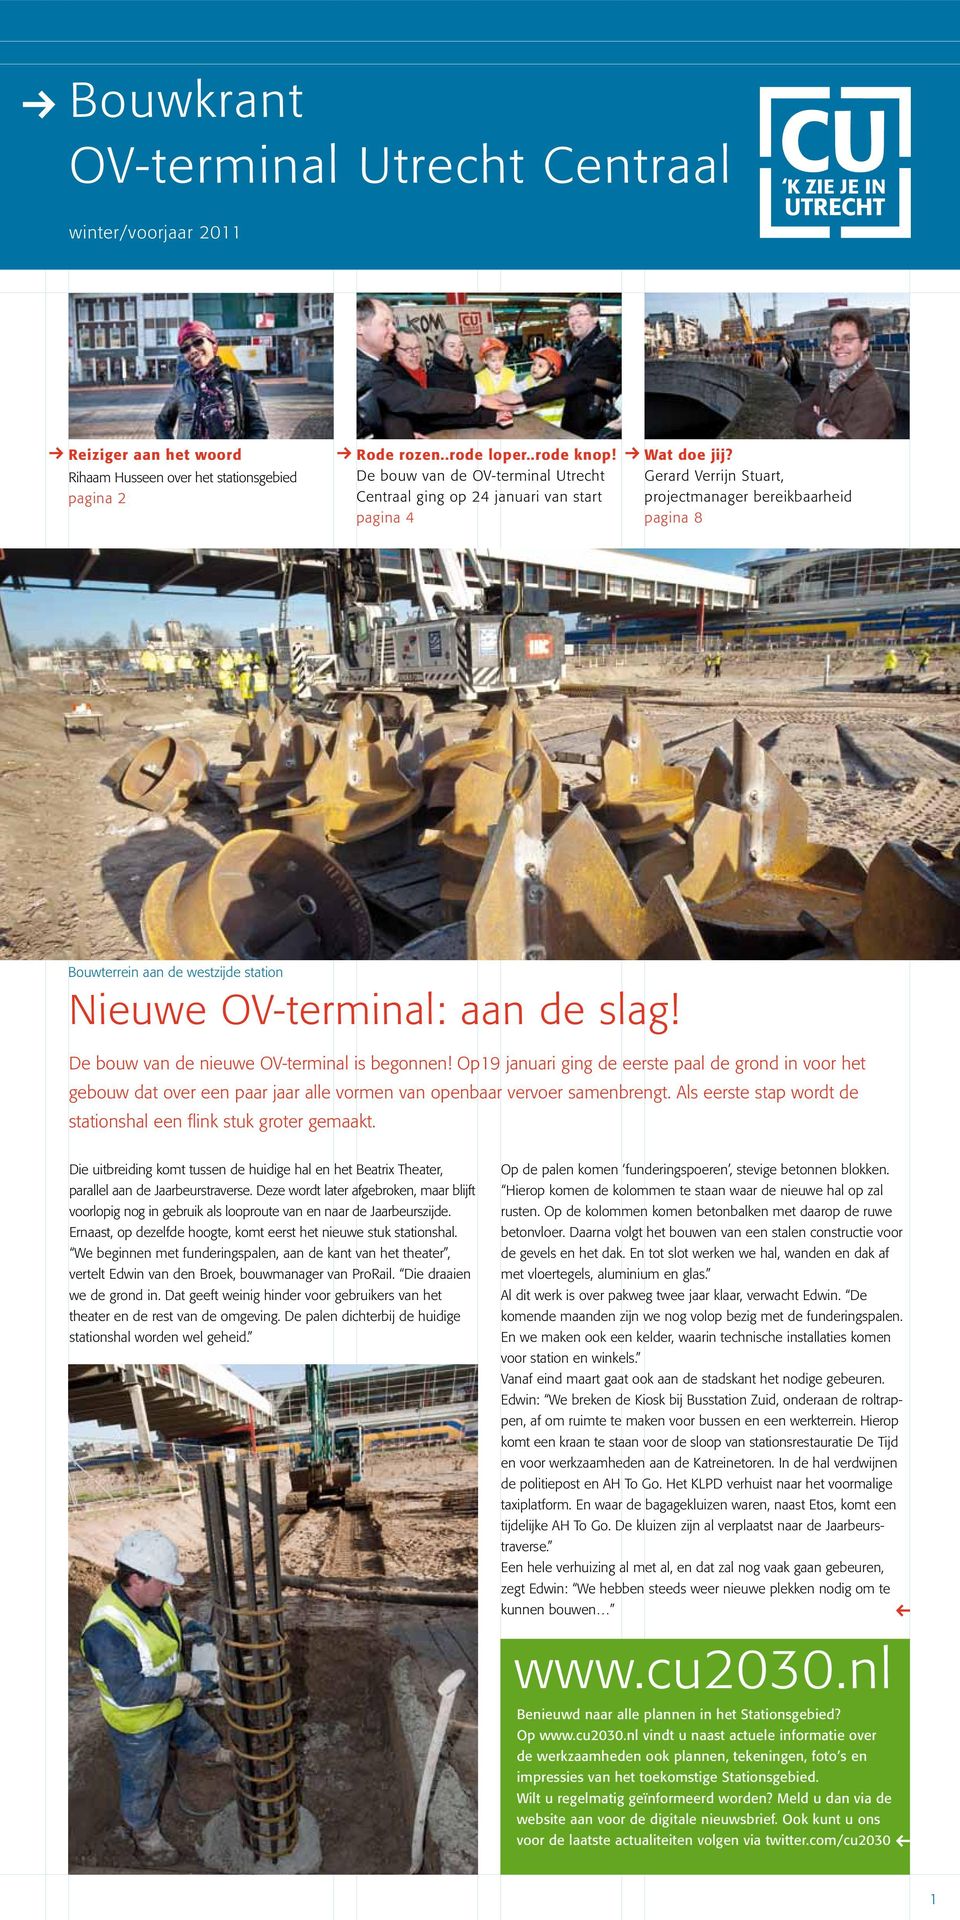 Gerard Verrijn Stuart, projectmanager bereikbaarheid pagina 8 Bouwterrein aan de westzijde station Nieuwe OV-terminal: aan de slag! De bouw van de nieuwe OV-terminal is begonnen!